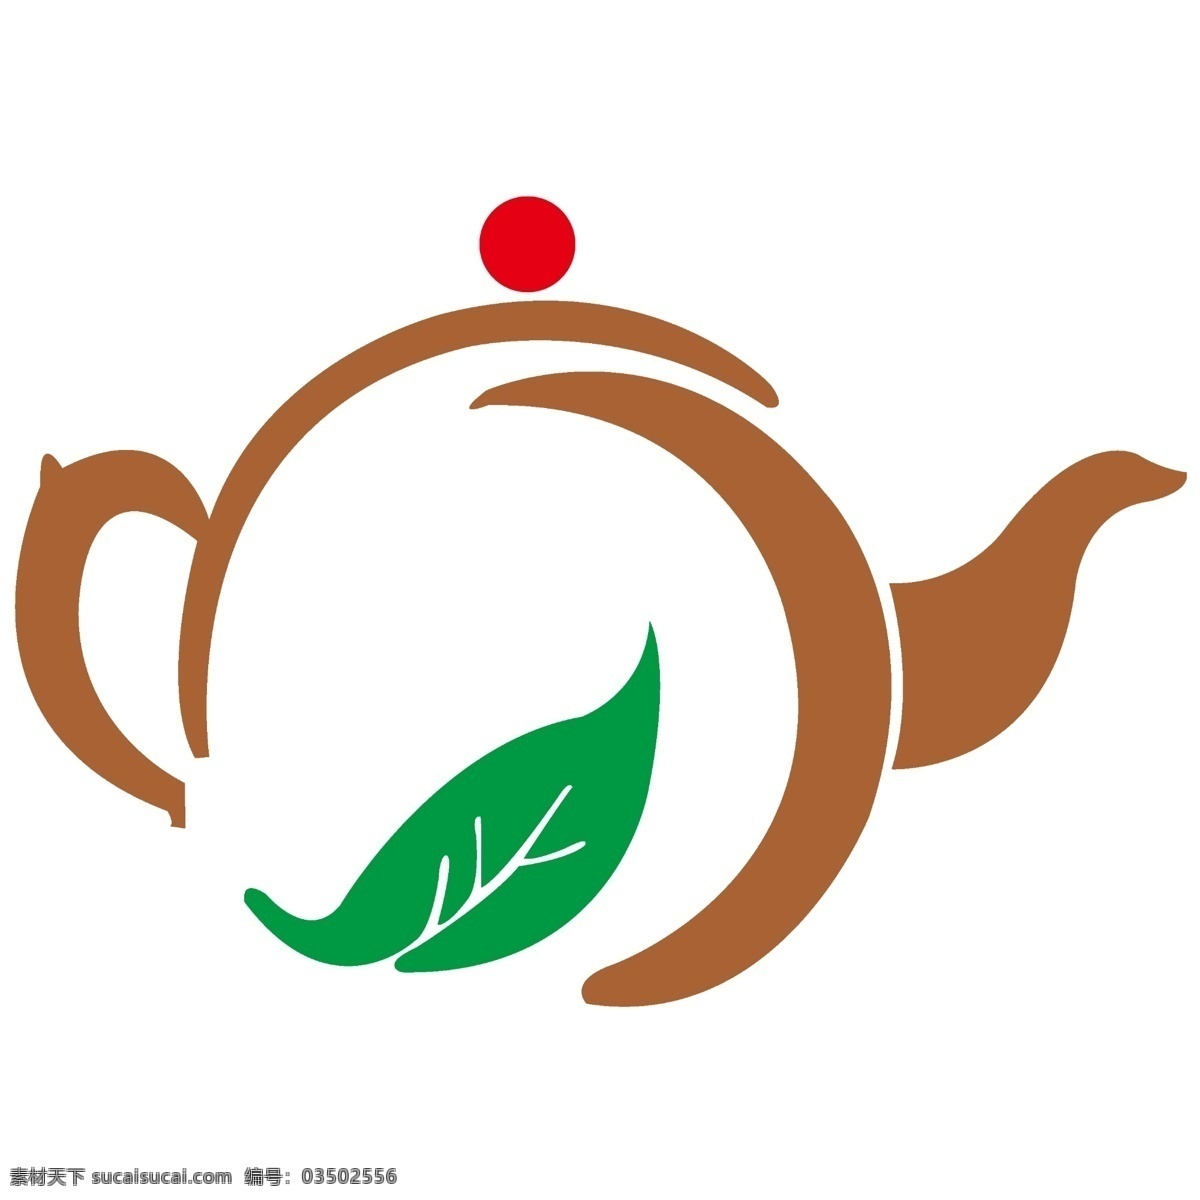 创意标志 茶壶 智能图像 logo 红色 绿色 咖啡色